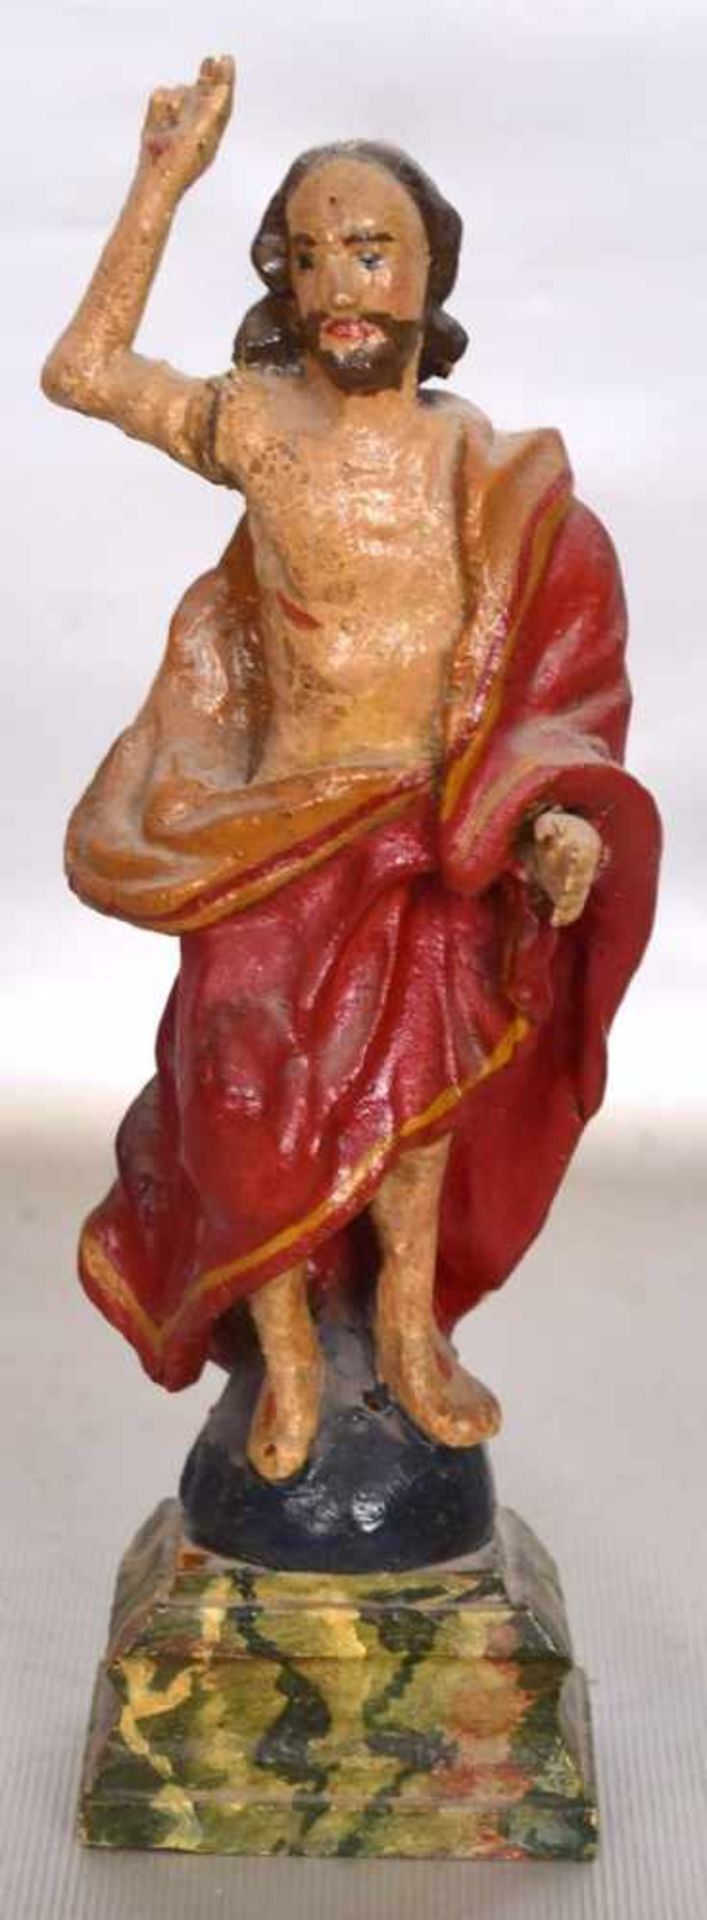 Christusskulpturauf Sockel stehend, Holz geschnitzt, bunt bemalt, H 20 cm, 19. Jh.